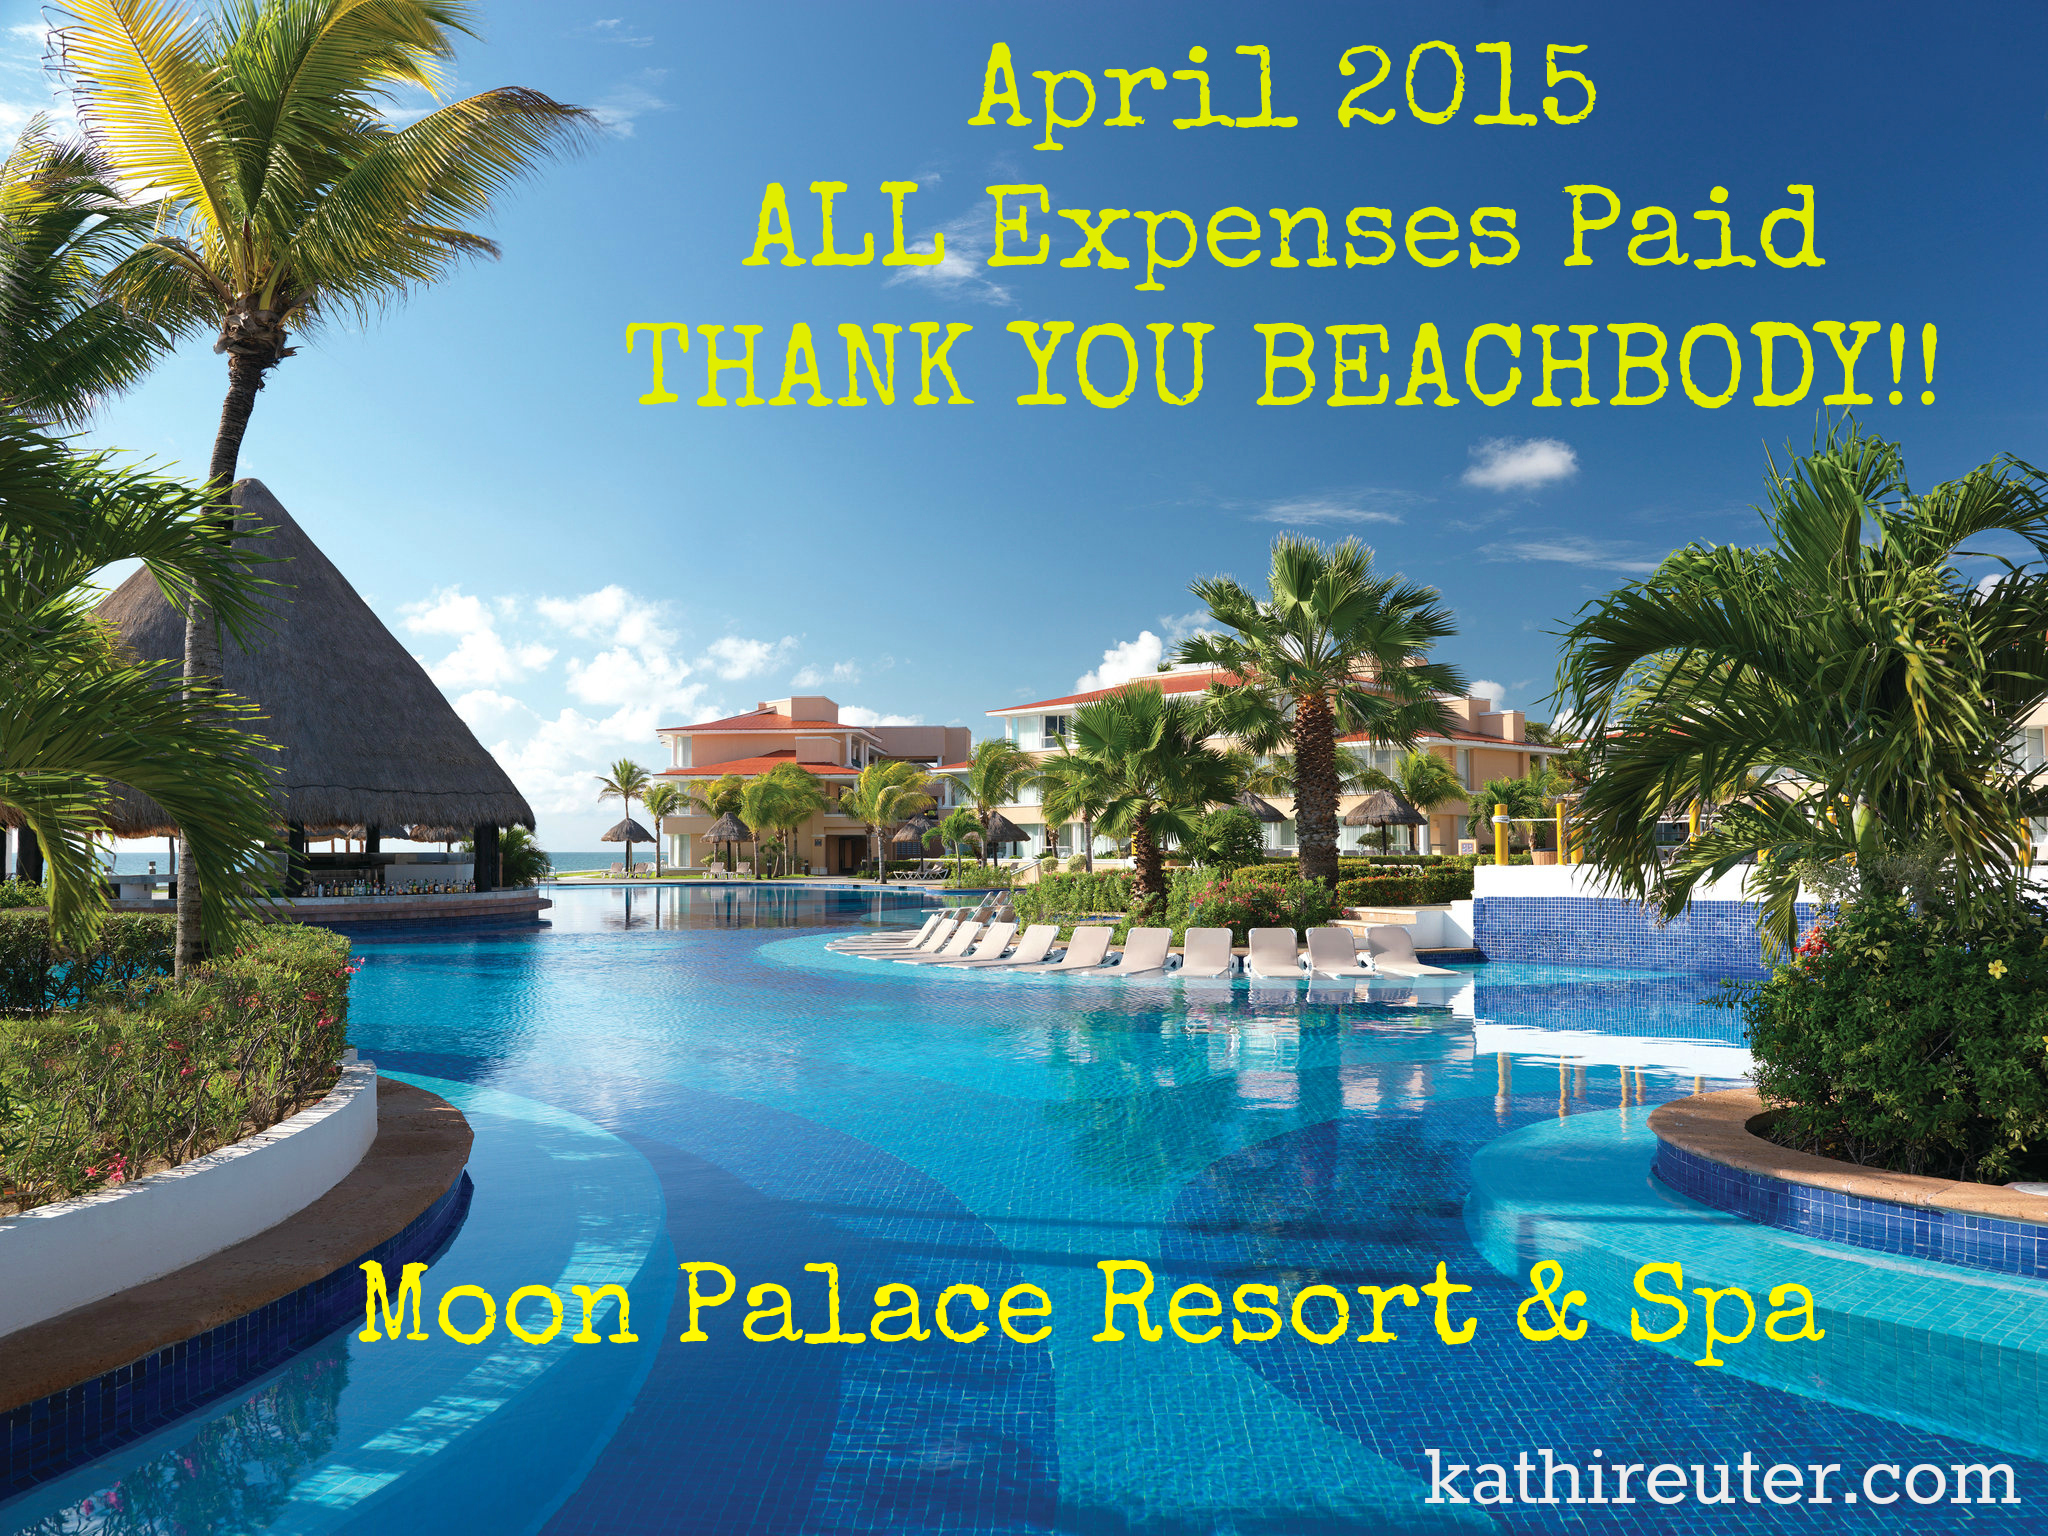 Cancun Moon Palace Beachbody Success Club Trip